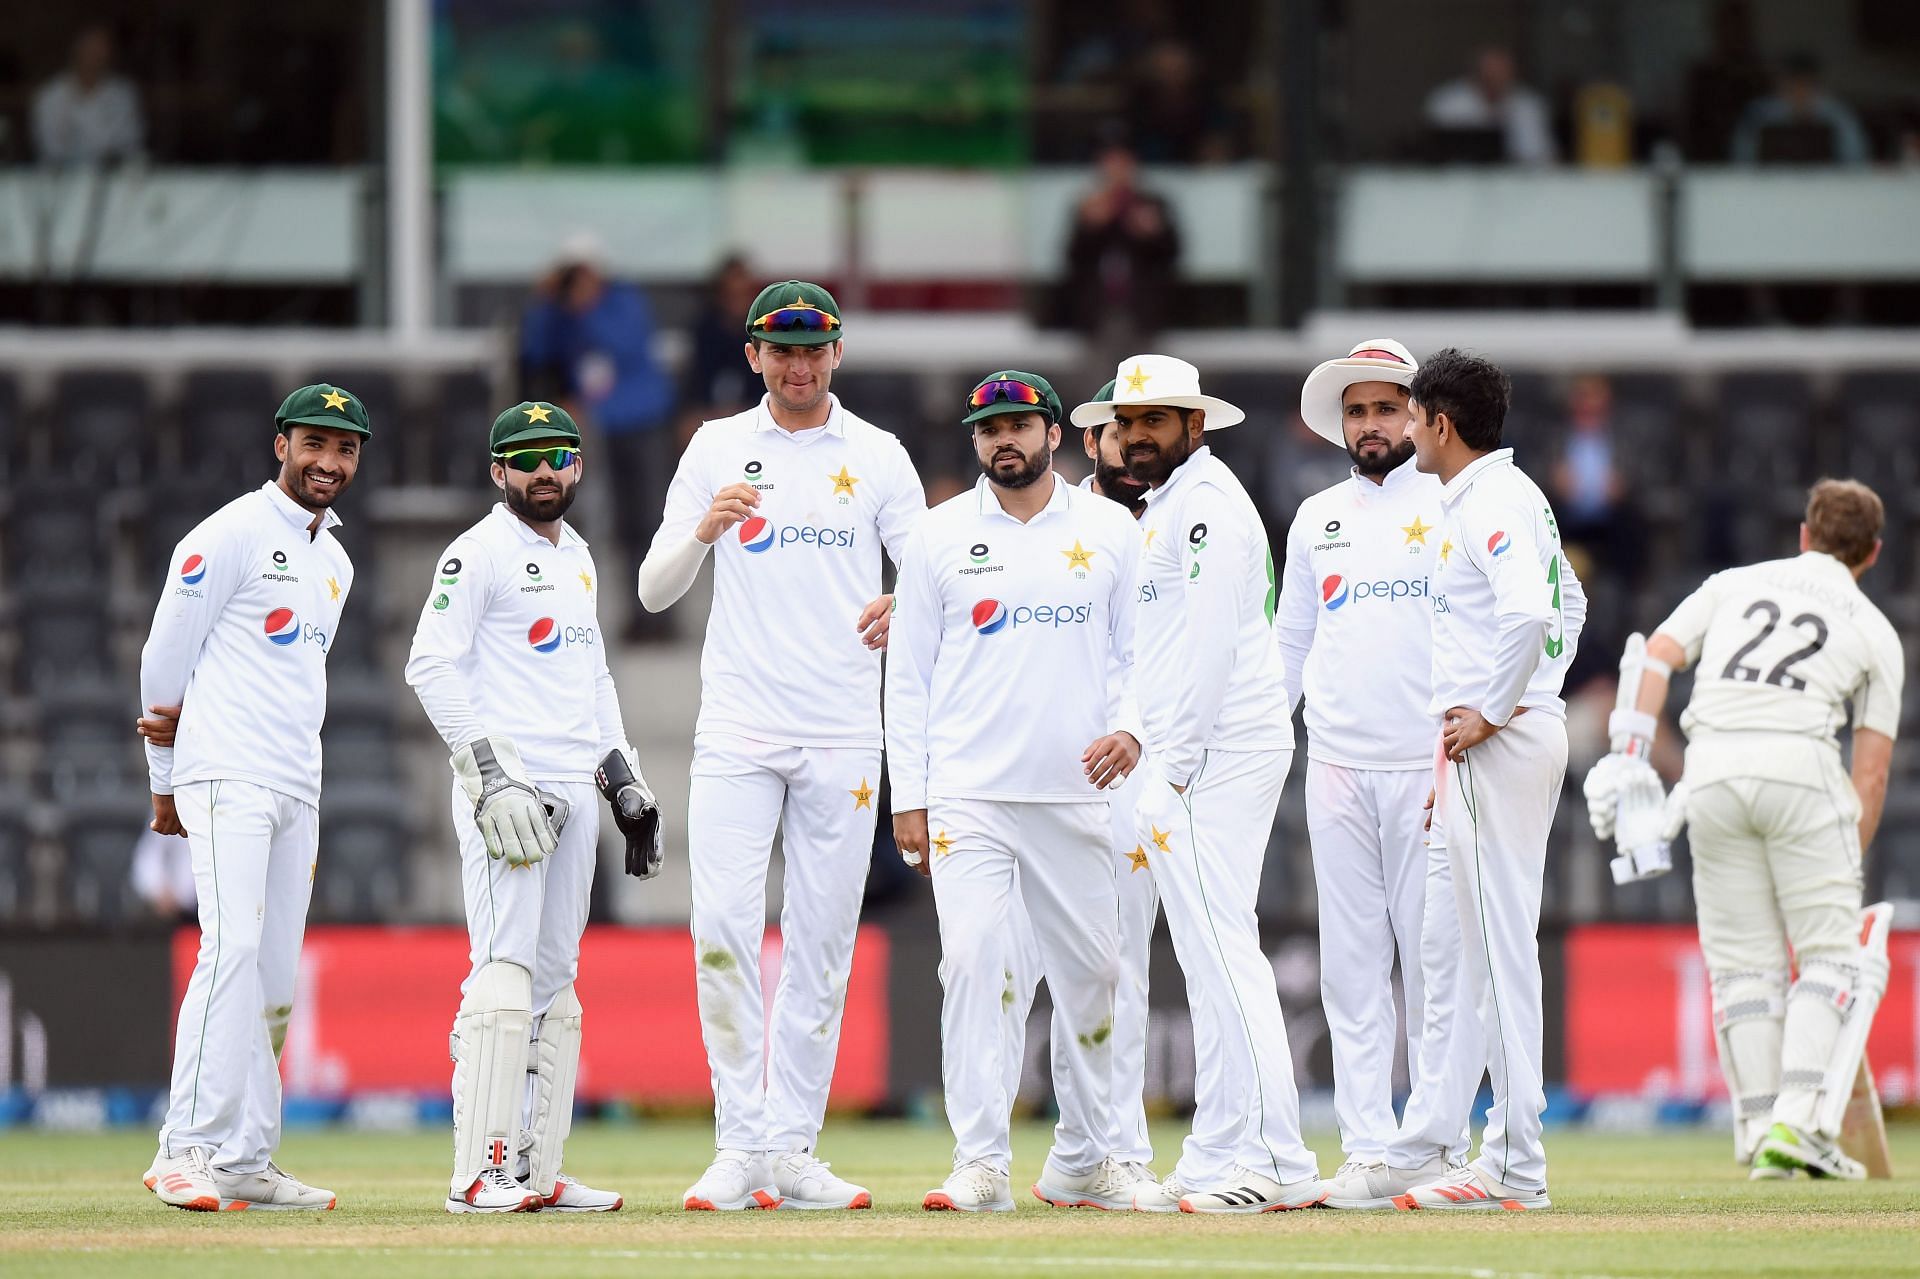 श्रीलंका में पाकिस्तान की टीम दो टेस्ट मैच खेलने जाएगी